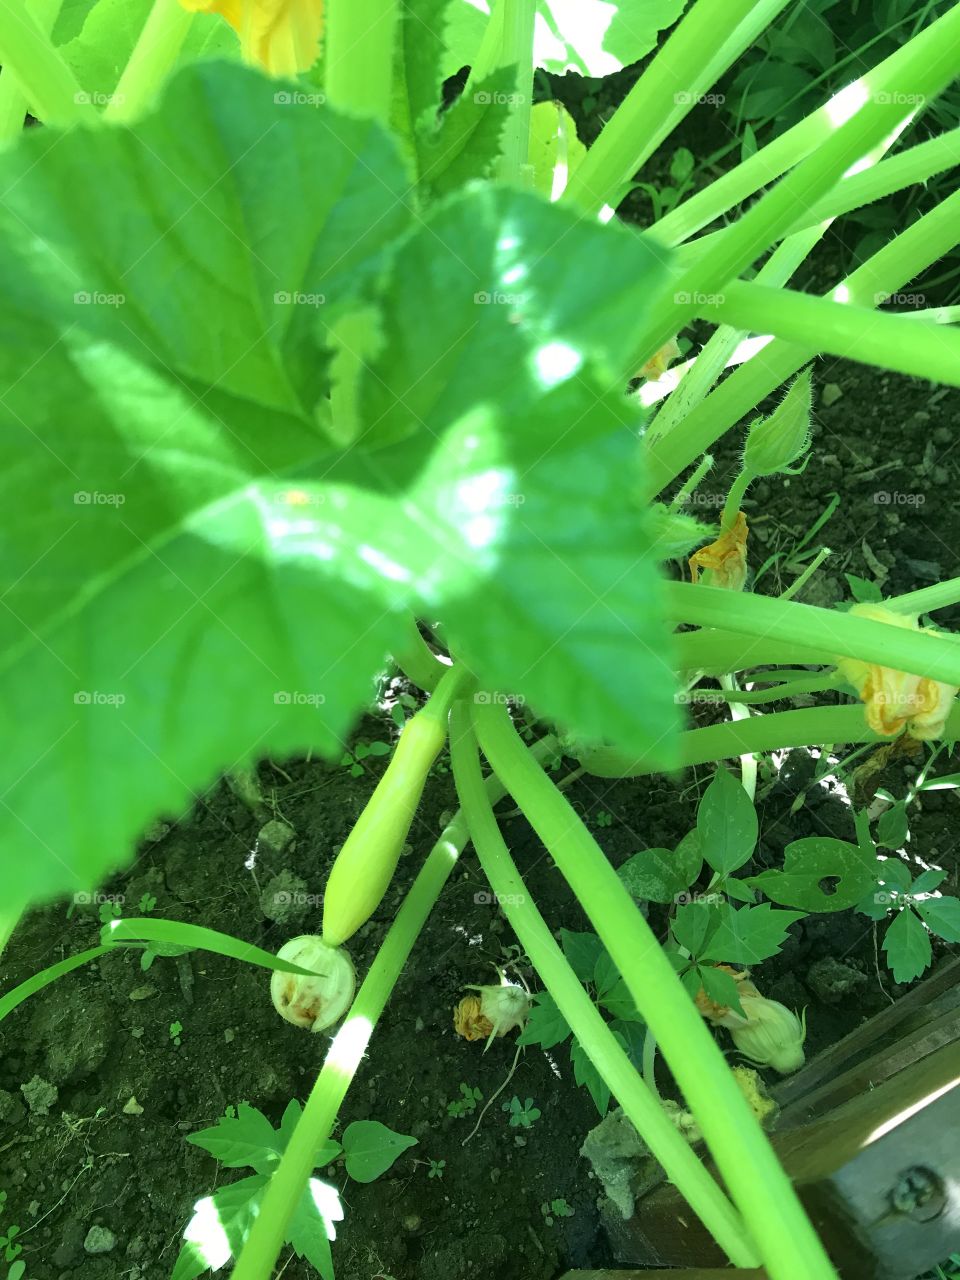 Baby yellow squash vegetable growing in green garden 